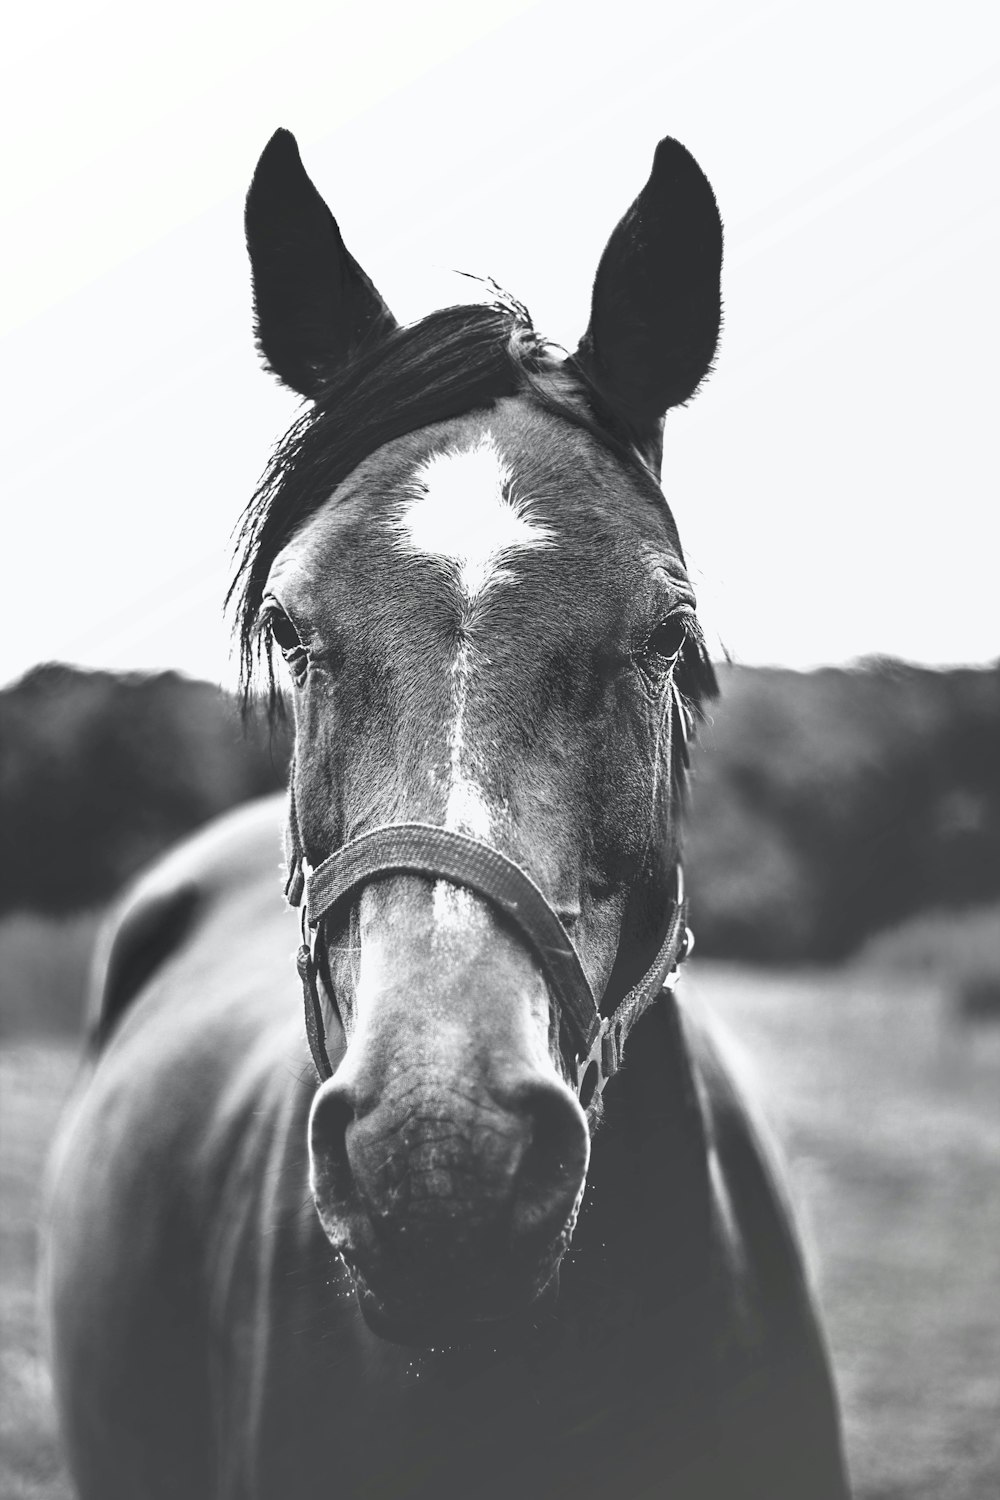 fotografia in scala di grigi del cavallo